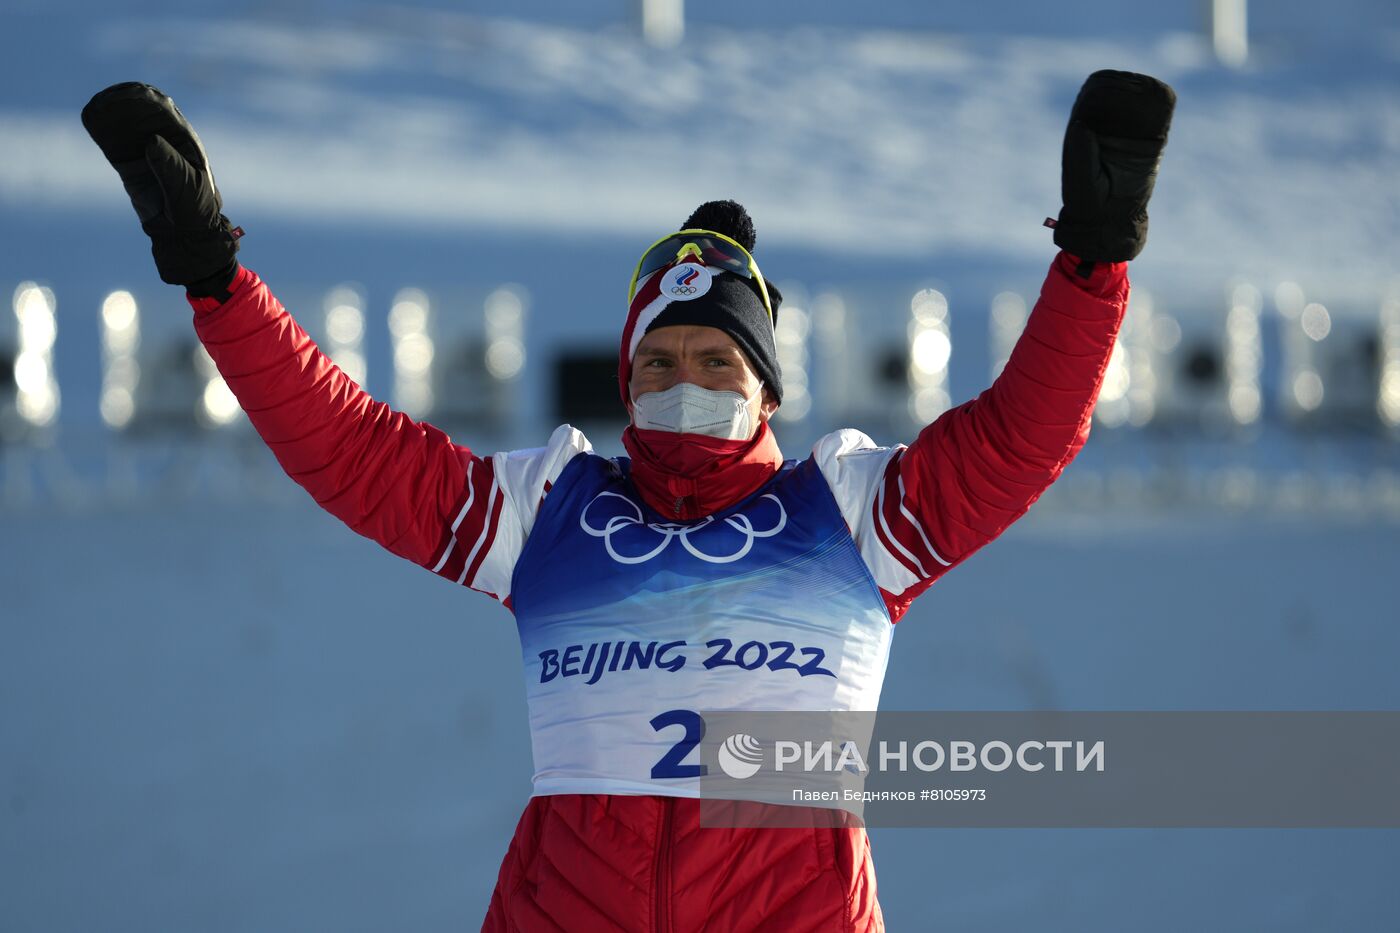 Видео скиатлона сегодня мужчины. Лыжные гонки красивое фото российские спортсмены.